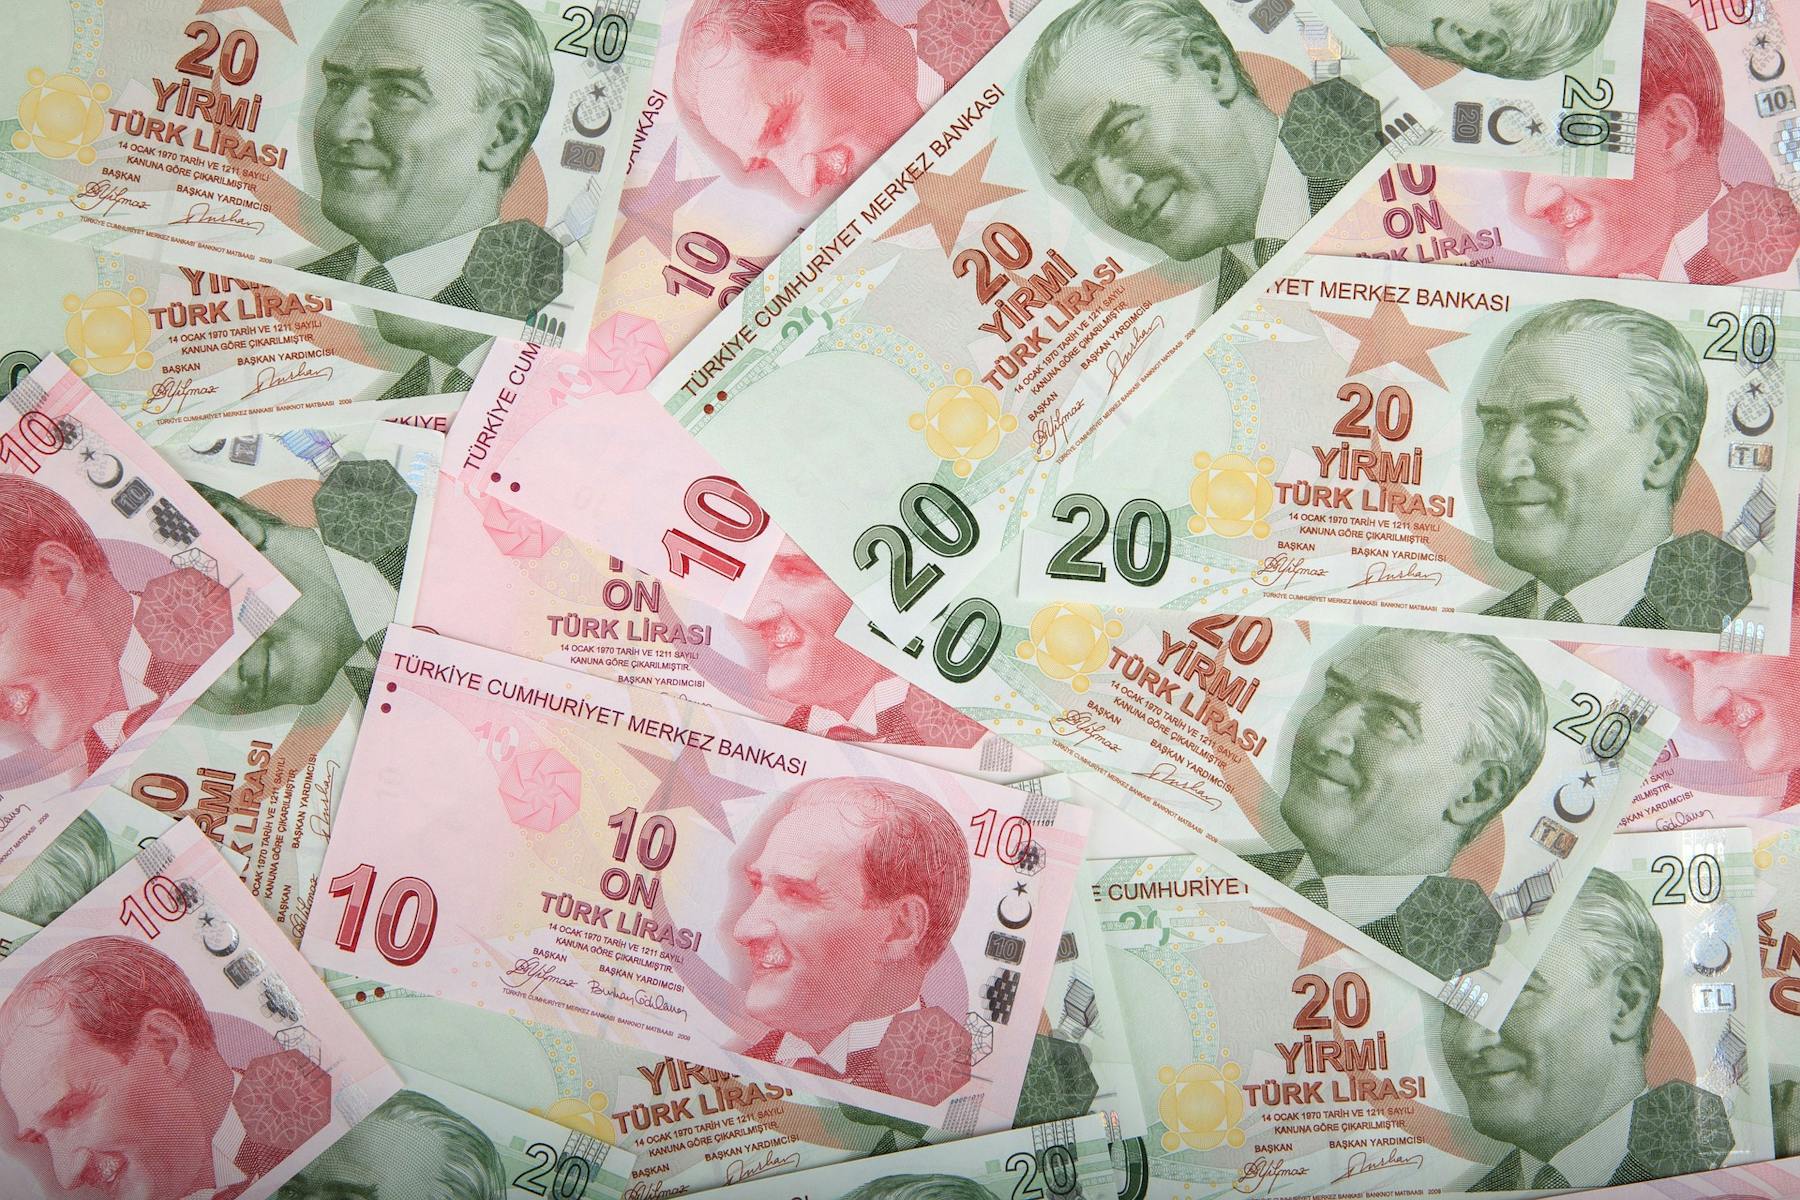 monnaie en turquie : lires turques